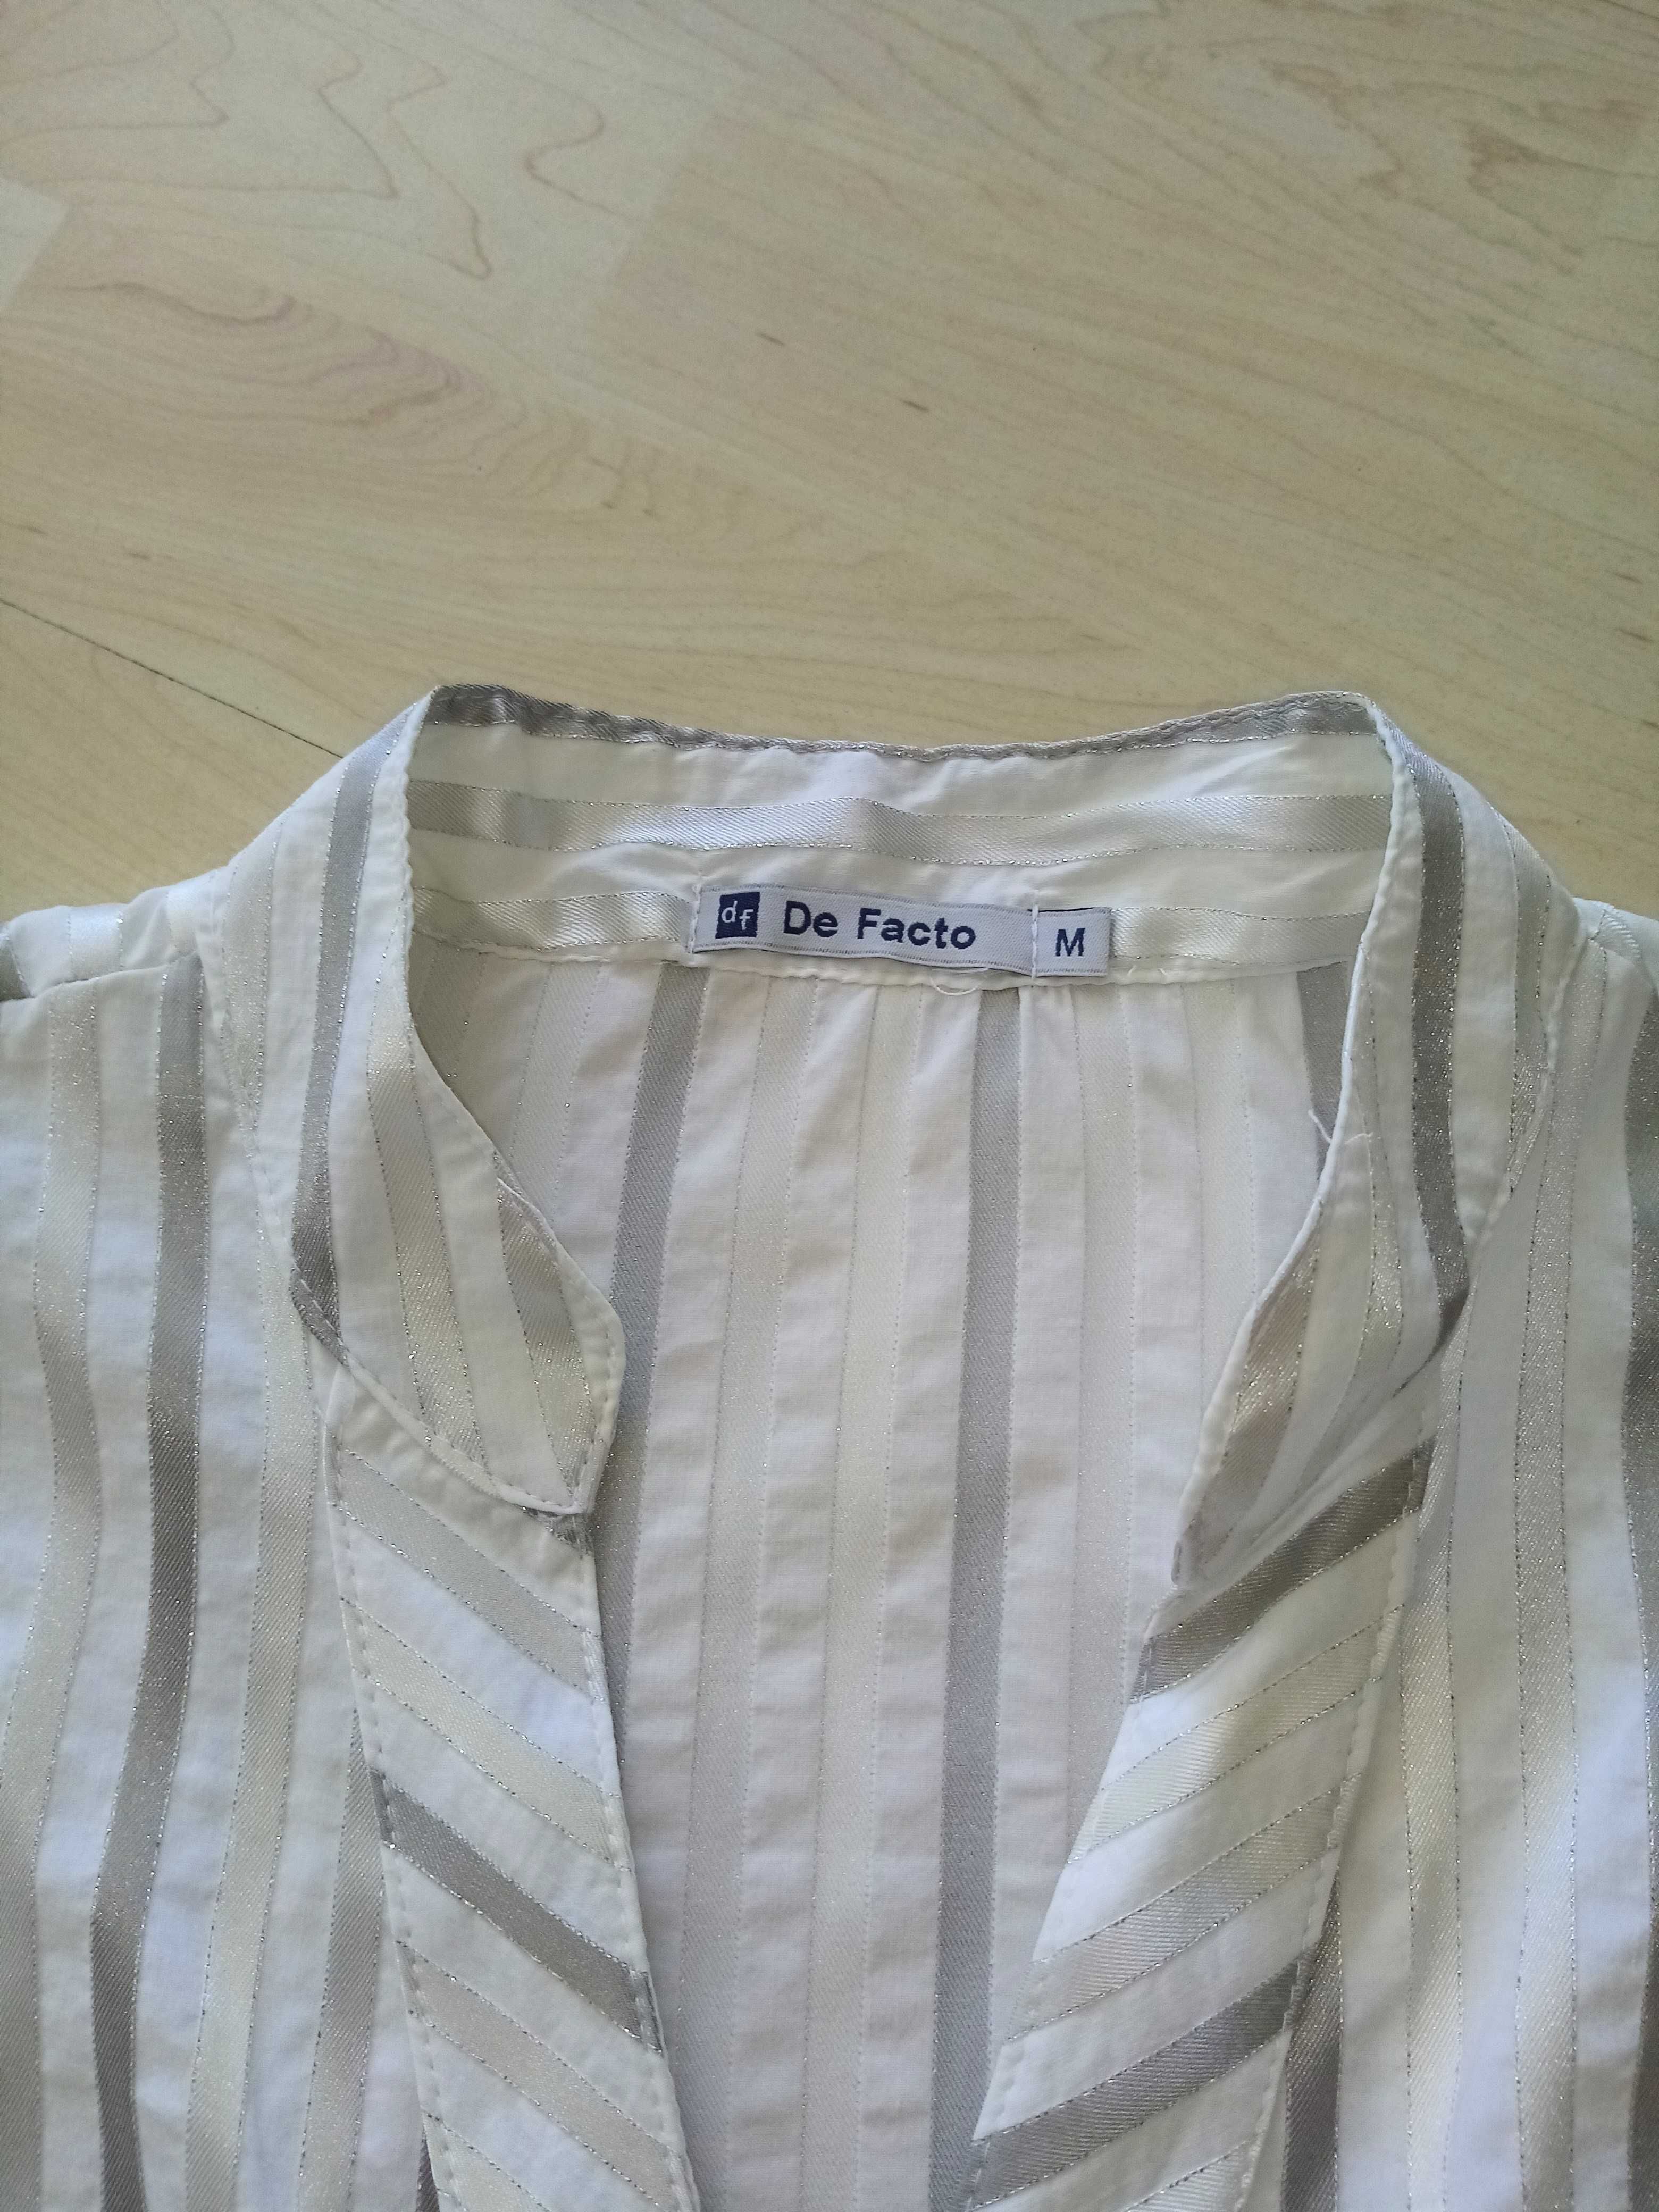 Śliczna bluzka, koszula, de Facto, ecru/biel, w paski, r.38/ M